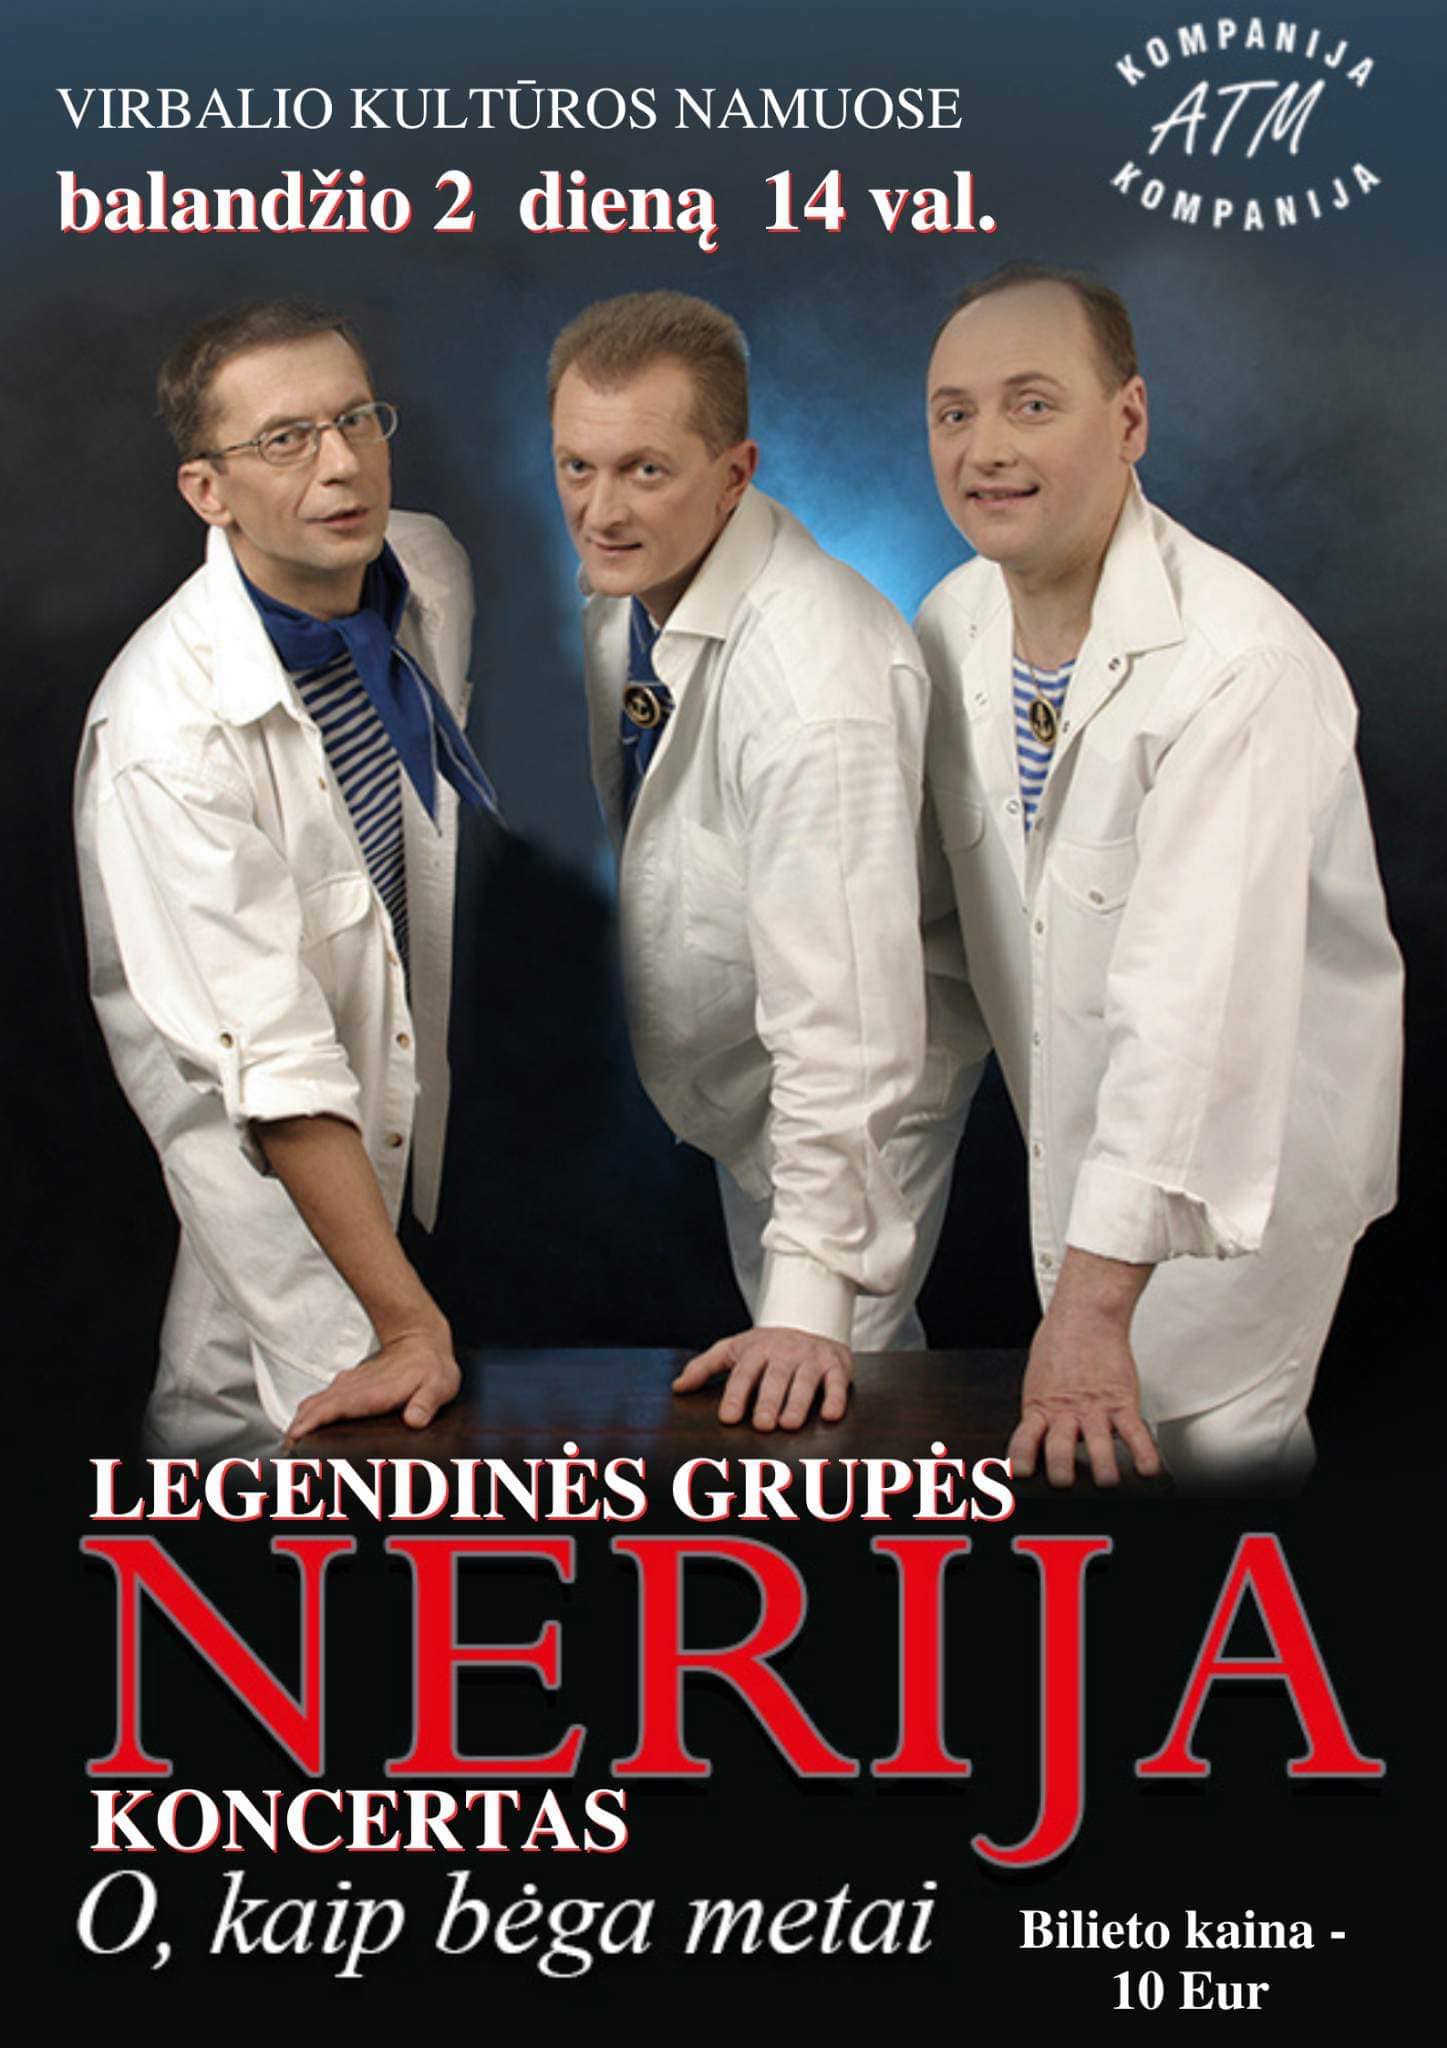 Grupės „Nerija“ koncertas Virbalyje